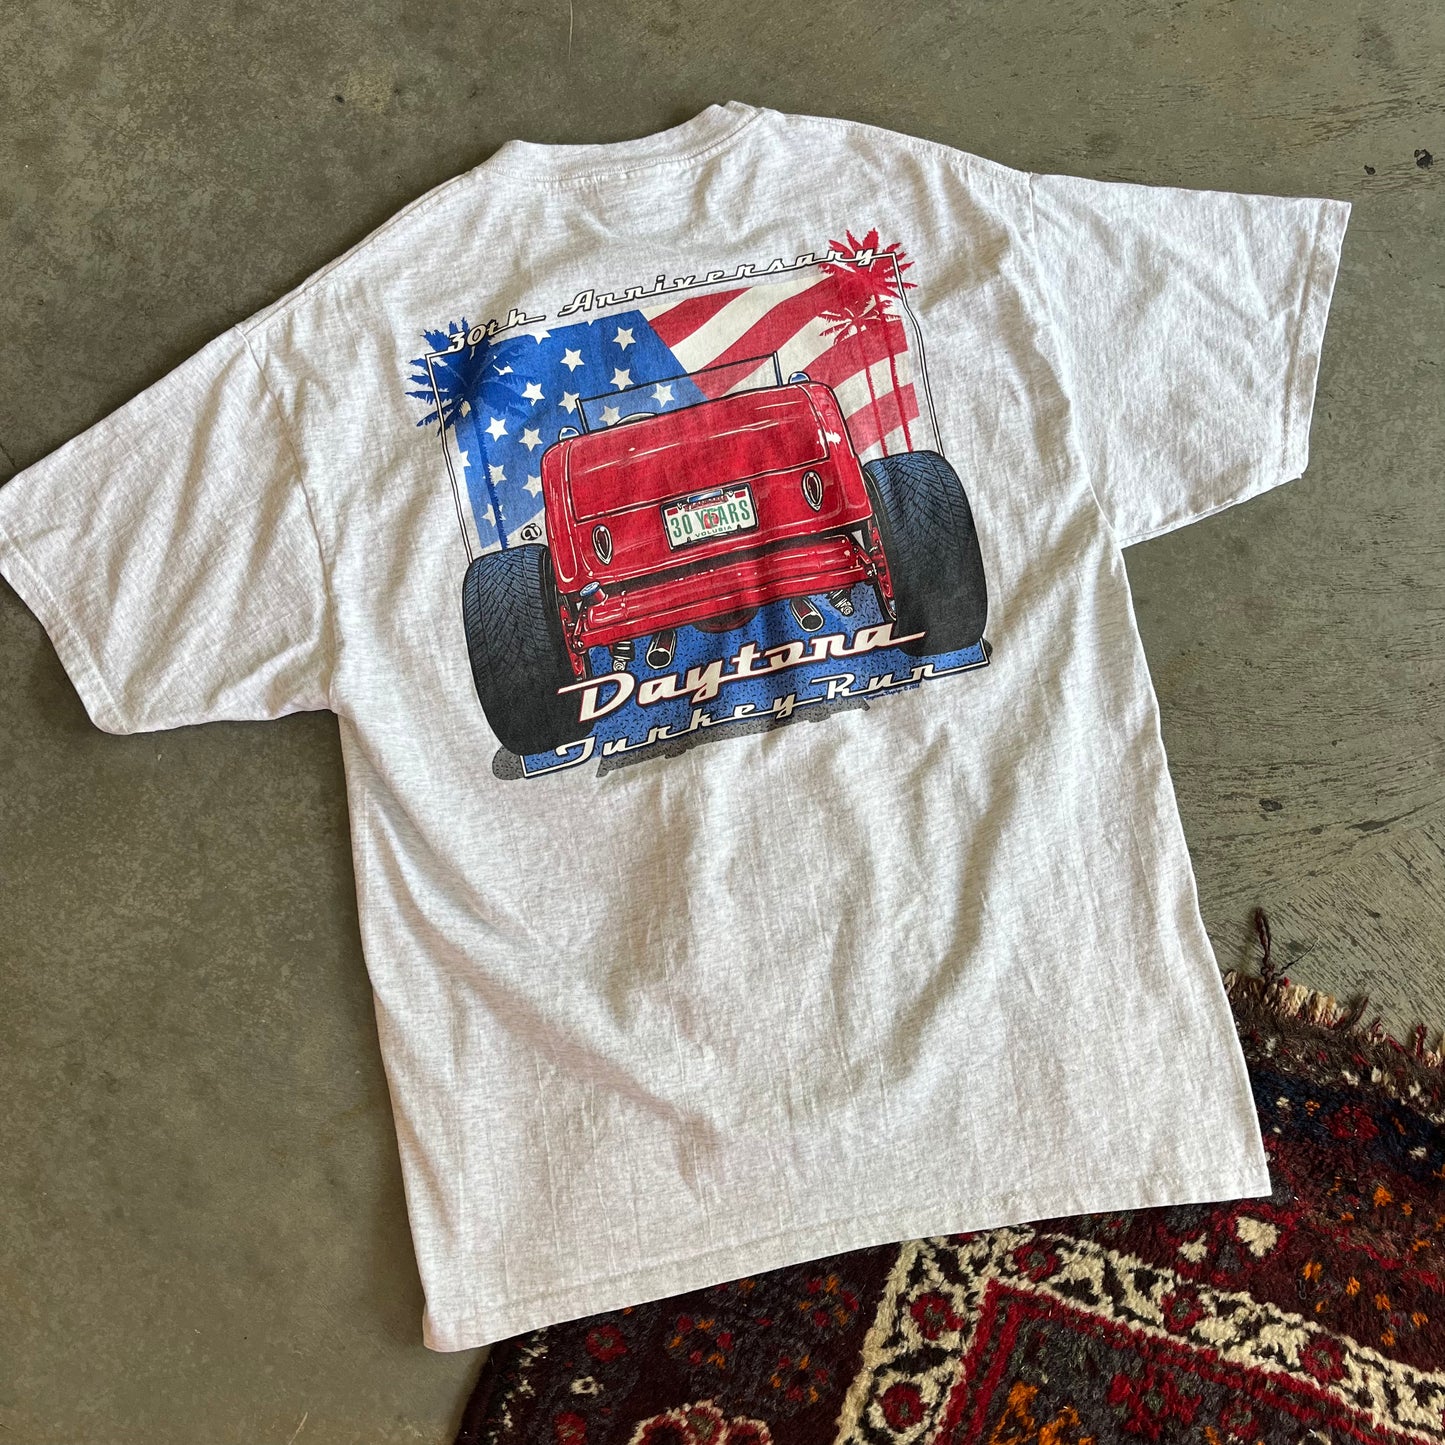 Daytona Turkey Run Shirt - L